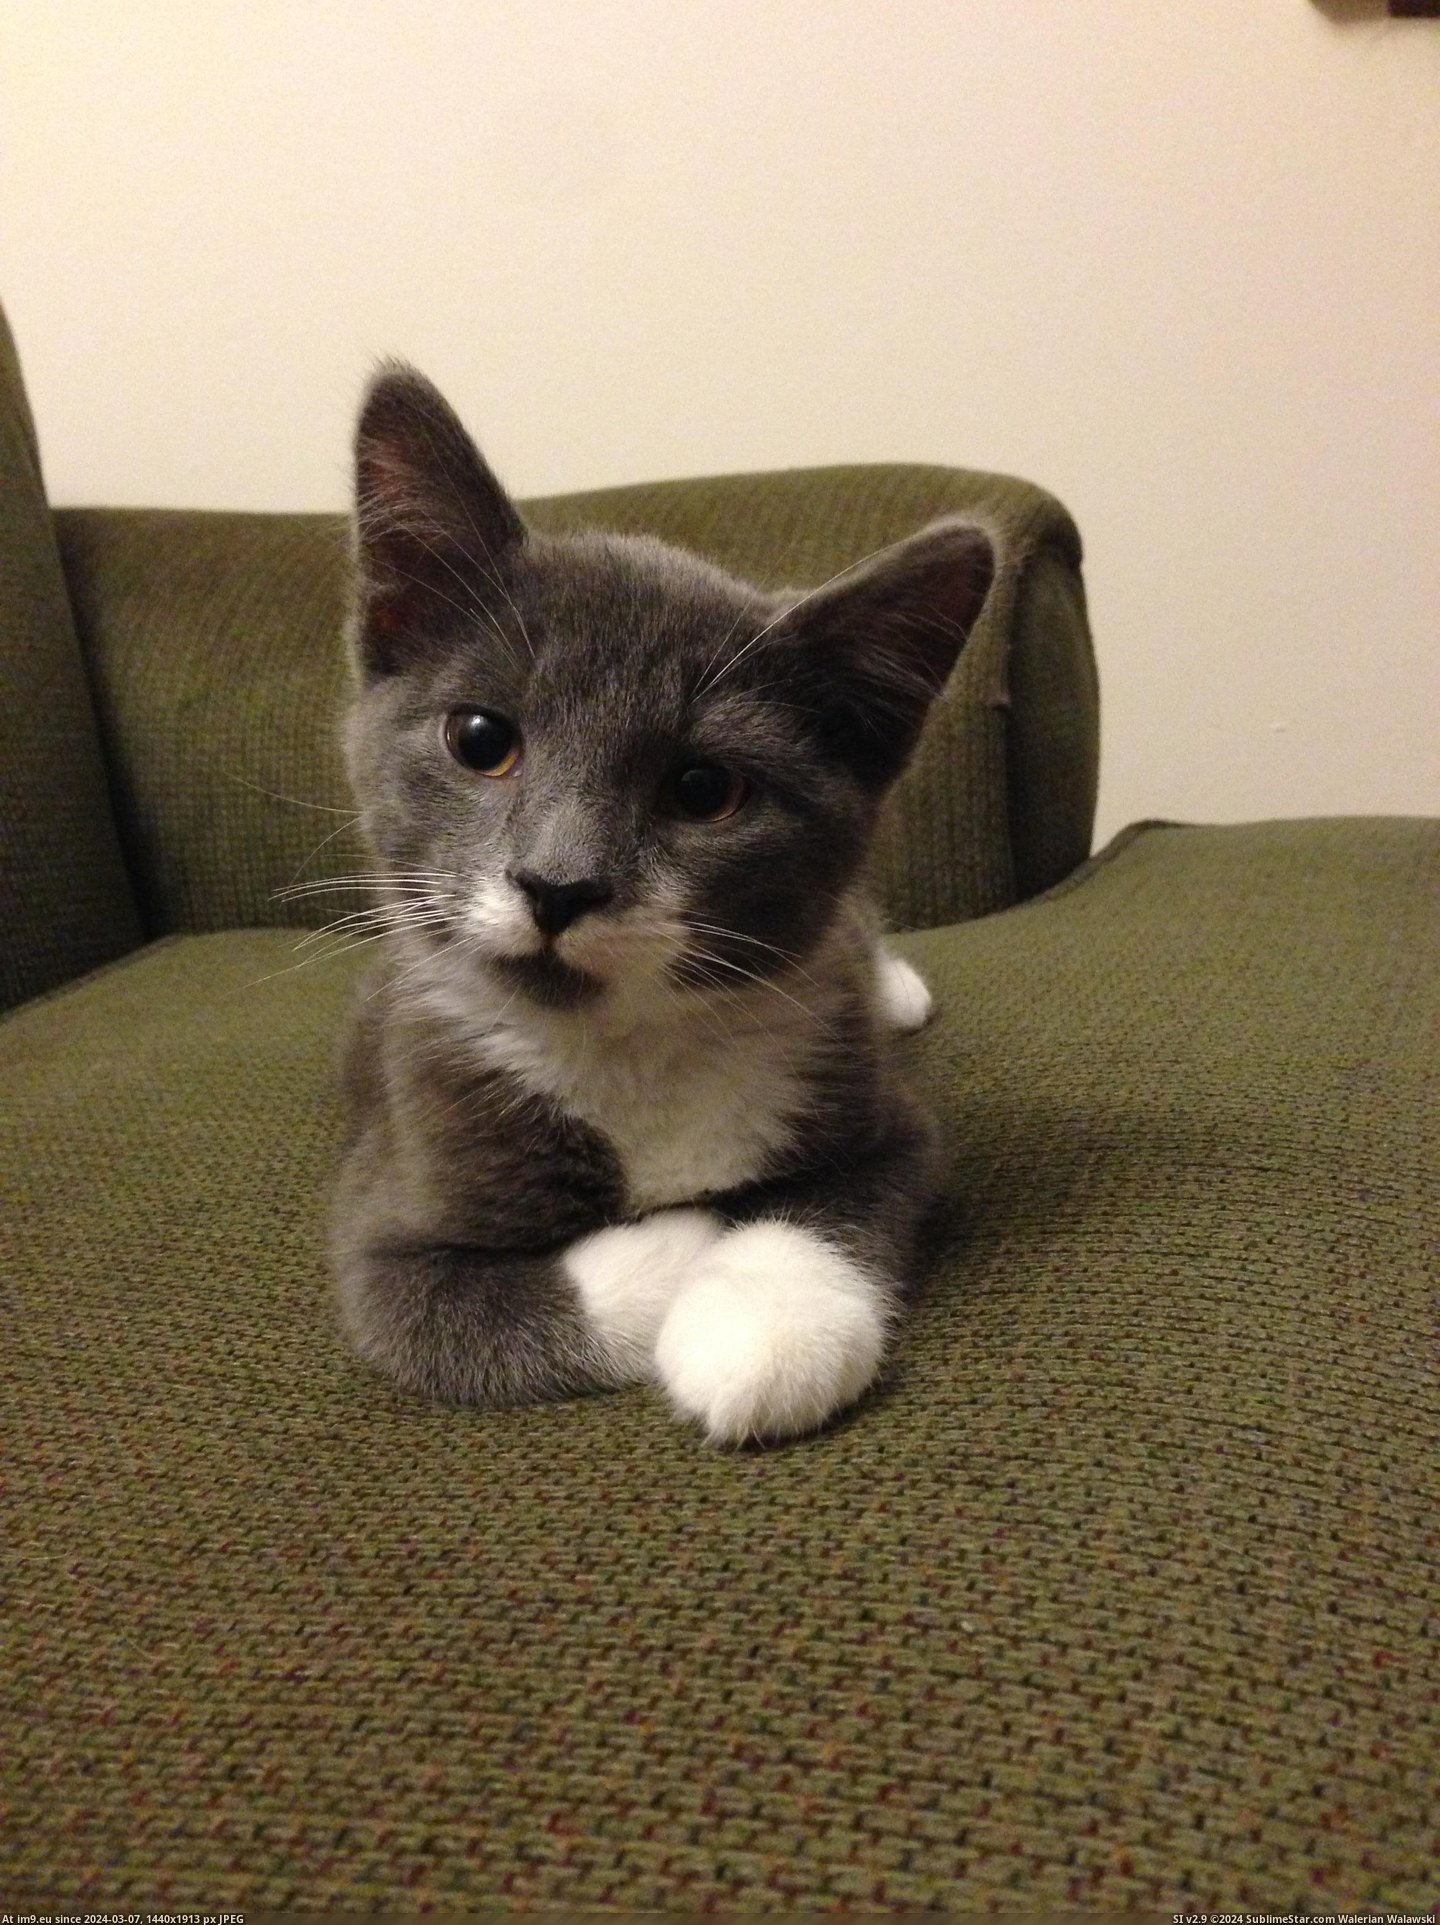 #Cat #New #Winston #Meet #Dapper [Aww] Reddit, meet Winston, my new dapper cat. 7 Pic. (Obraz z album My r/AWW favs))